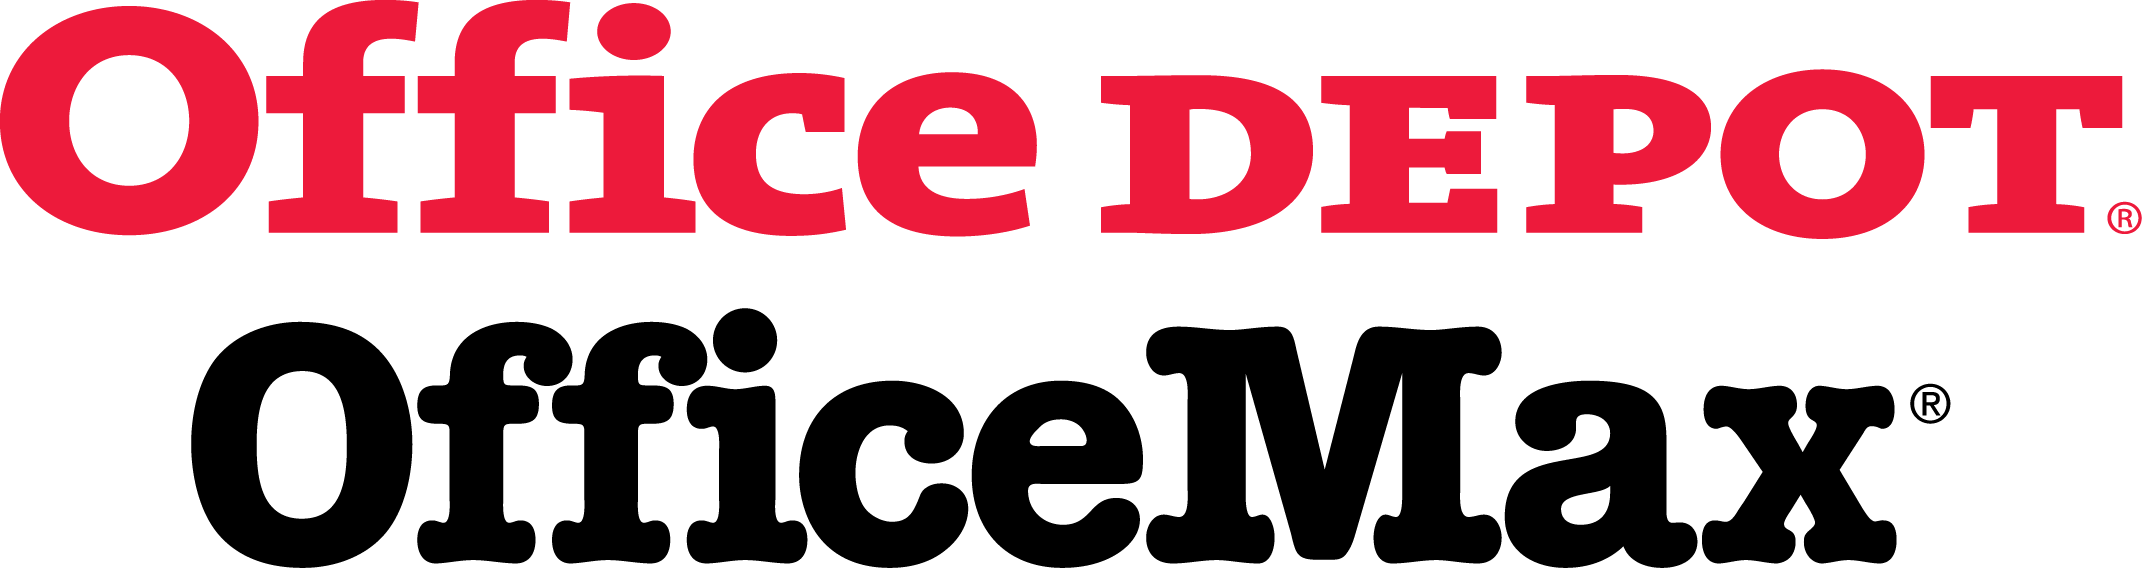 Office Depot-Max Logo